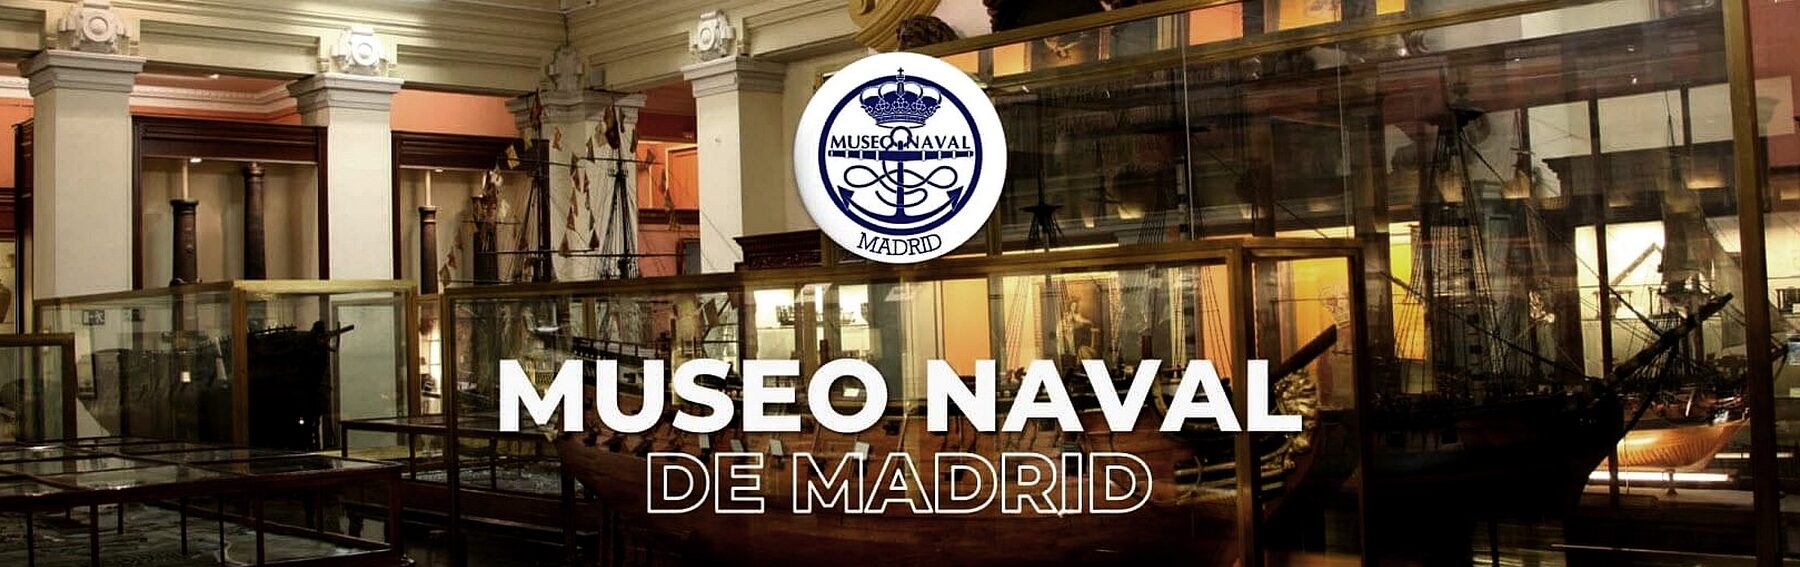 MUSEO NAVAL		Madrid	Madrid	Museo